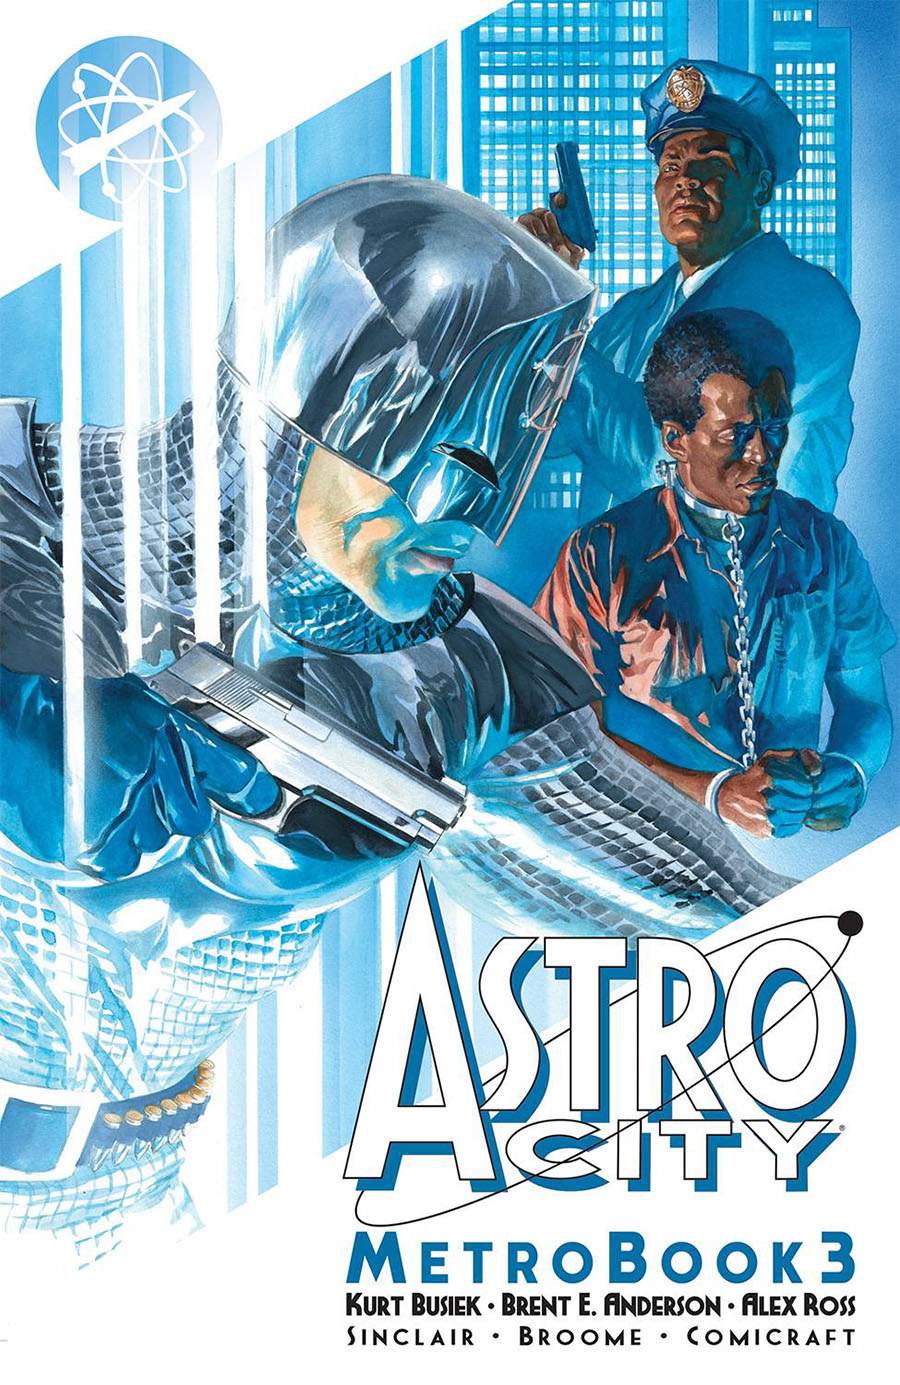 Astro City Metrobook Vol 3 TP